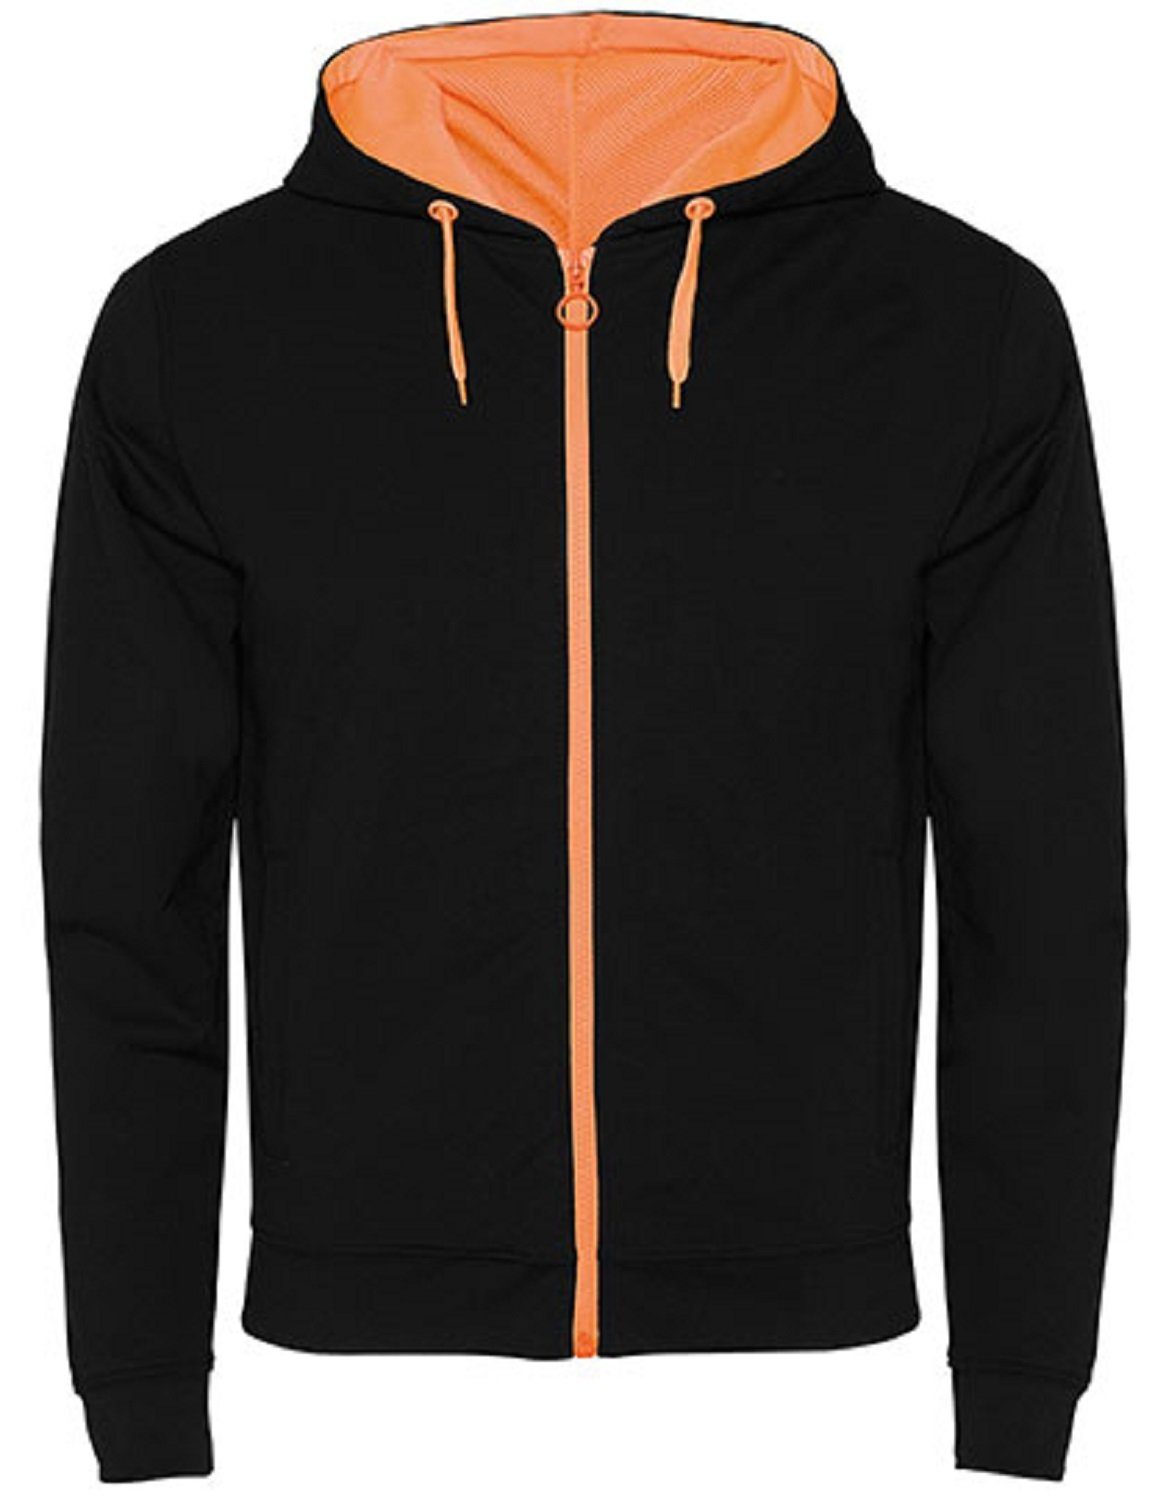 Roly Kapuzensweatjacke Herren Sweat-Jacke mit Kapuze / Kapuzensweater mit Reißverschluss auch für Frauen geeignet Schwarz/ Orange